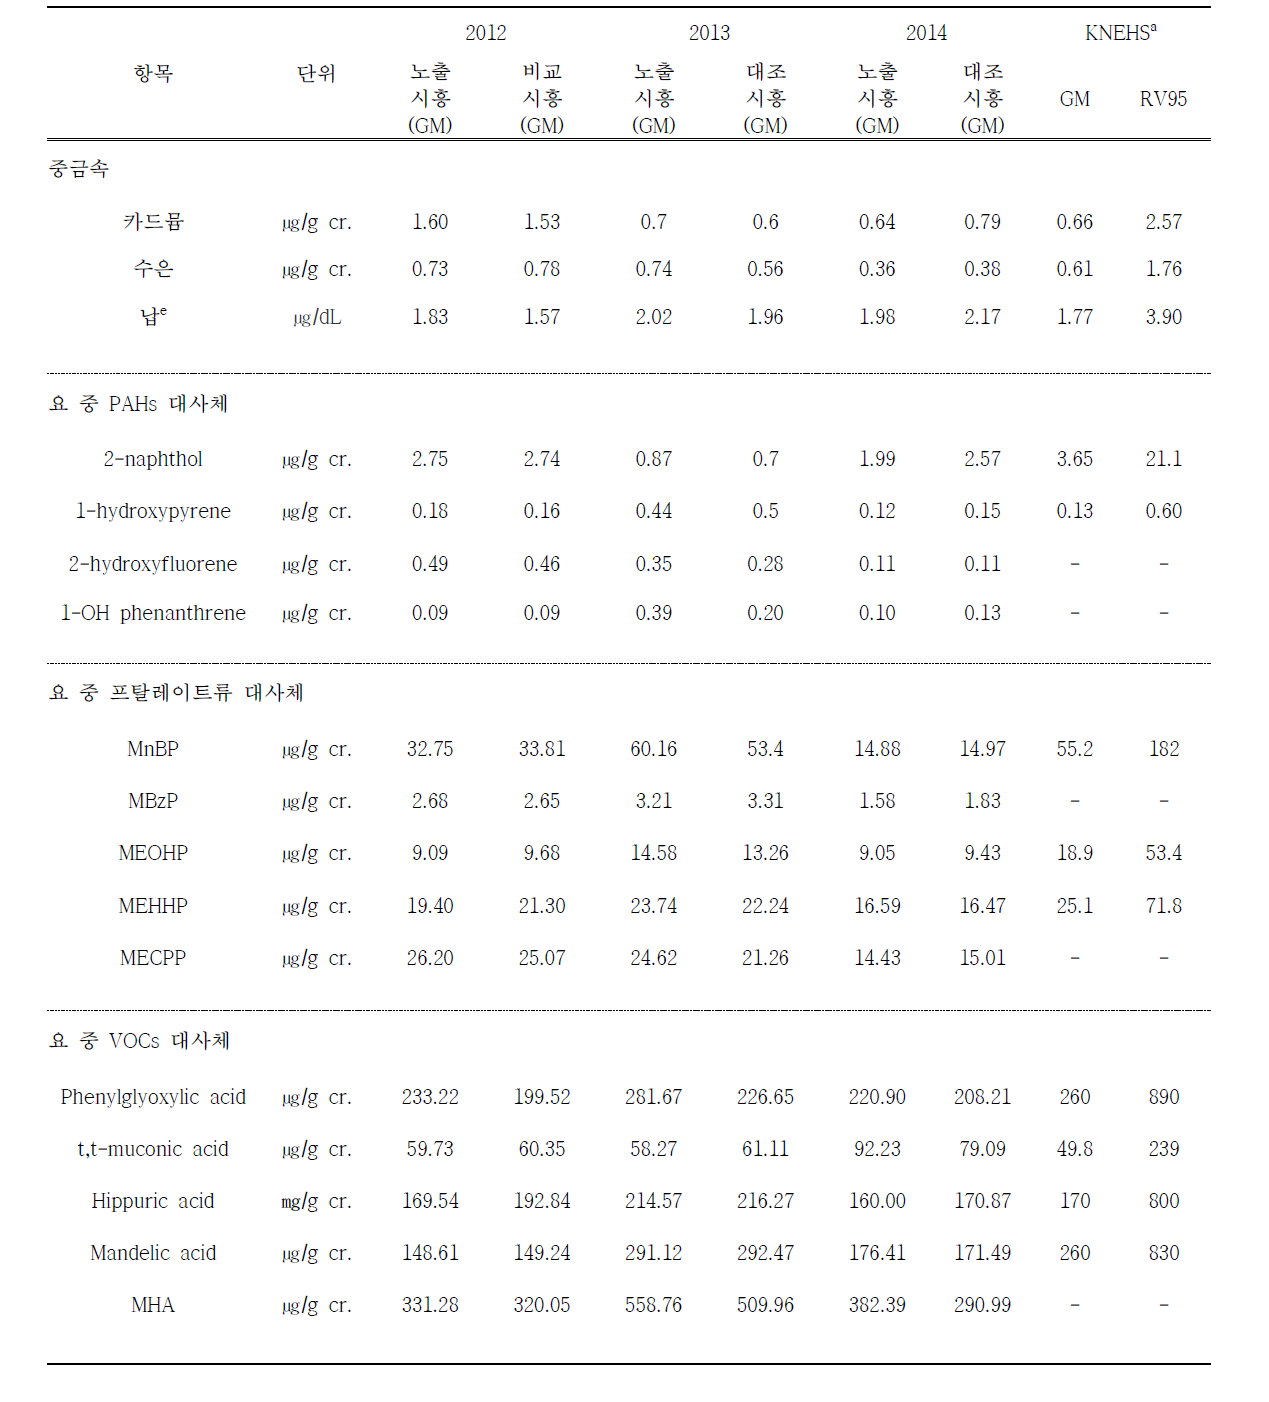 시흥지역 생체내 환경오염물질 농도 2012, 2013년도와 2014년도 비교